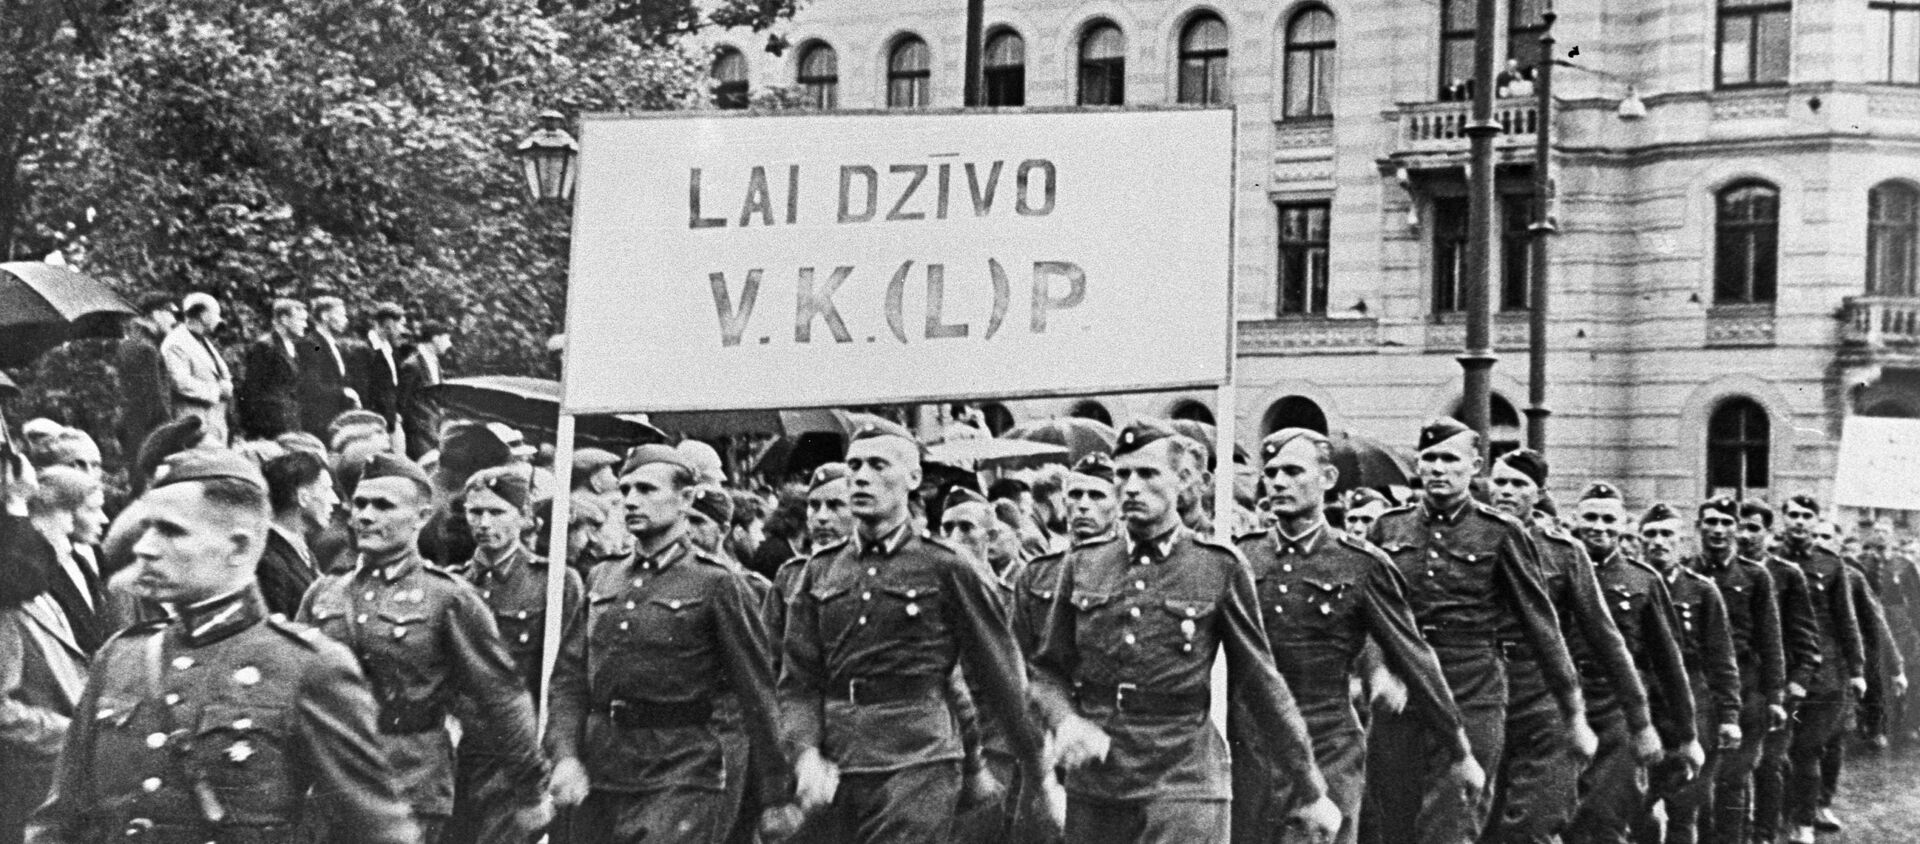 Колонна солдат латышской народной армии на демонстрации, посвященной принятию Латвии в состав СССР. - Sputnik Латвия, 1920, 23.07.2020